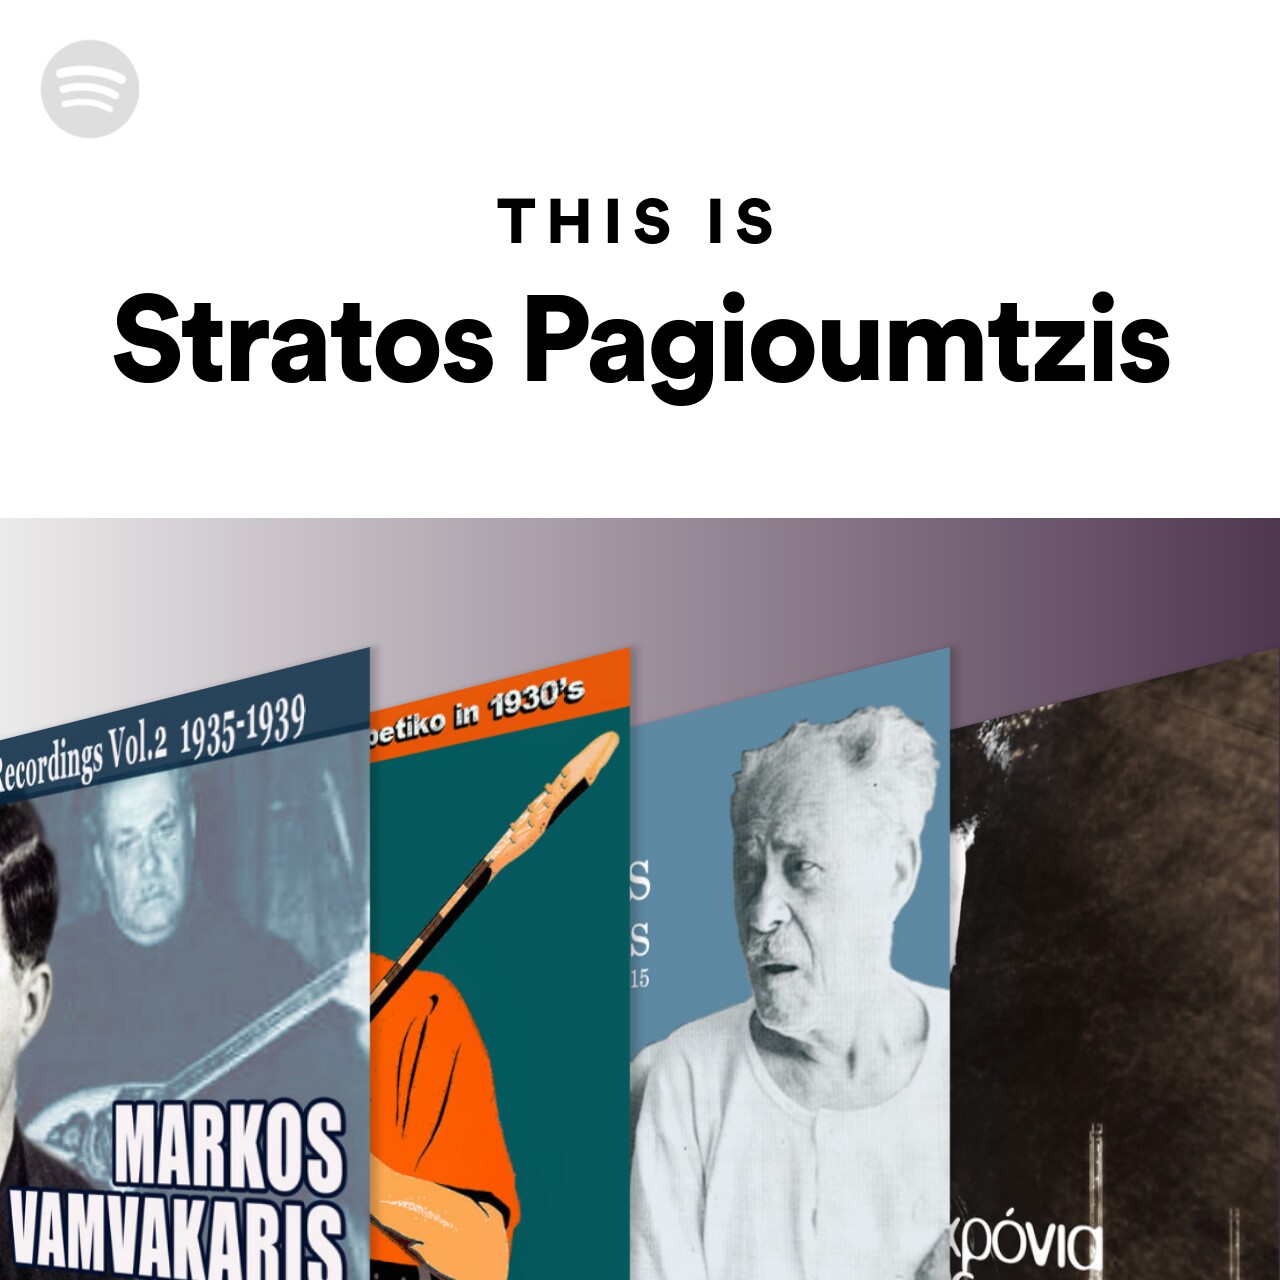 This Is Stratos Pagioumtzis